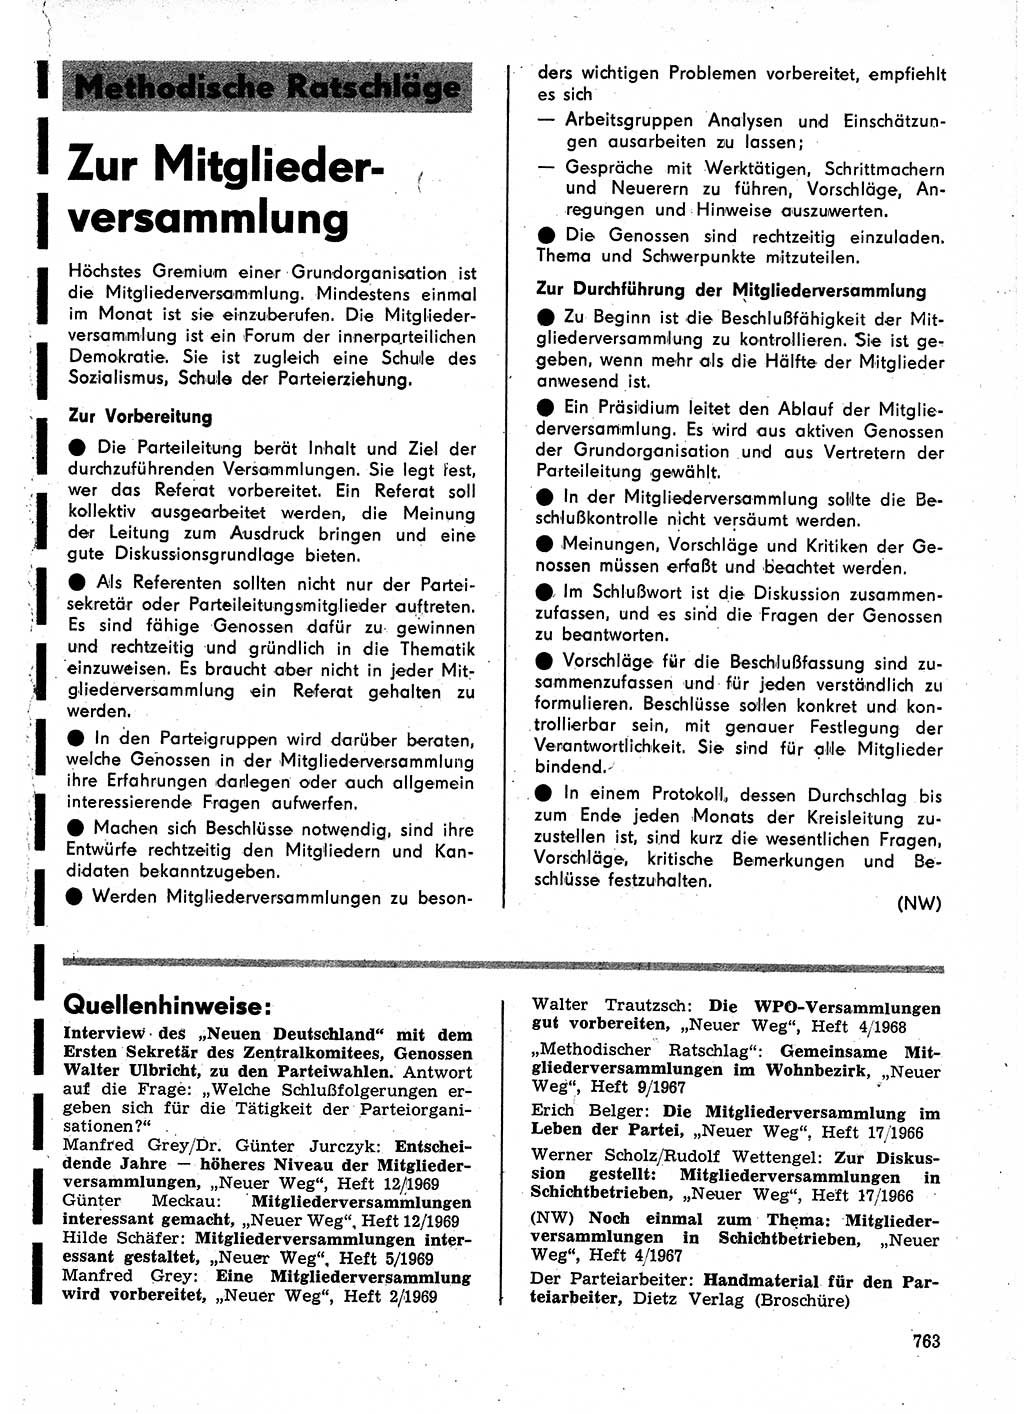 Neuer Weg (NW), Organ des Zentralkomitees (ZK) der SED (Sozialistische Einheitspartei Deutschlands) für Fragen des Parteilebens, 24. Jahrgang [Deutsche Demokratische Republik (DDR)] 1969, Seite 763 (NW ZK SED DDR 1969, S. 763)